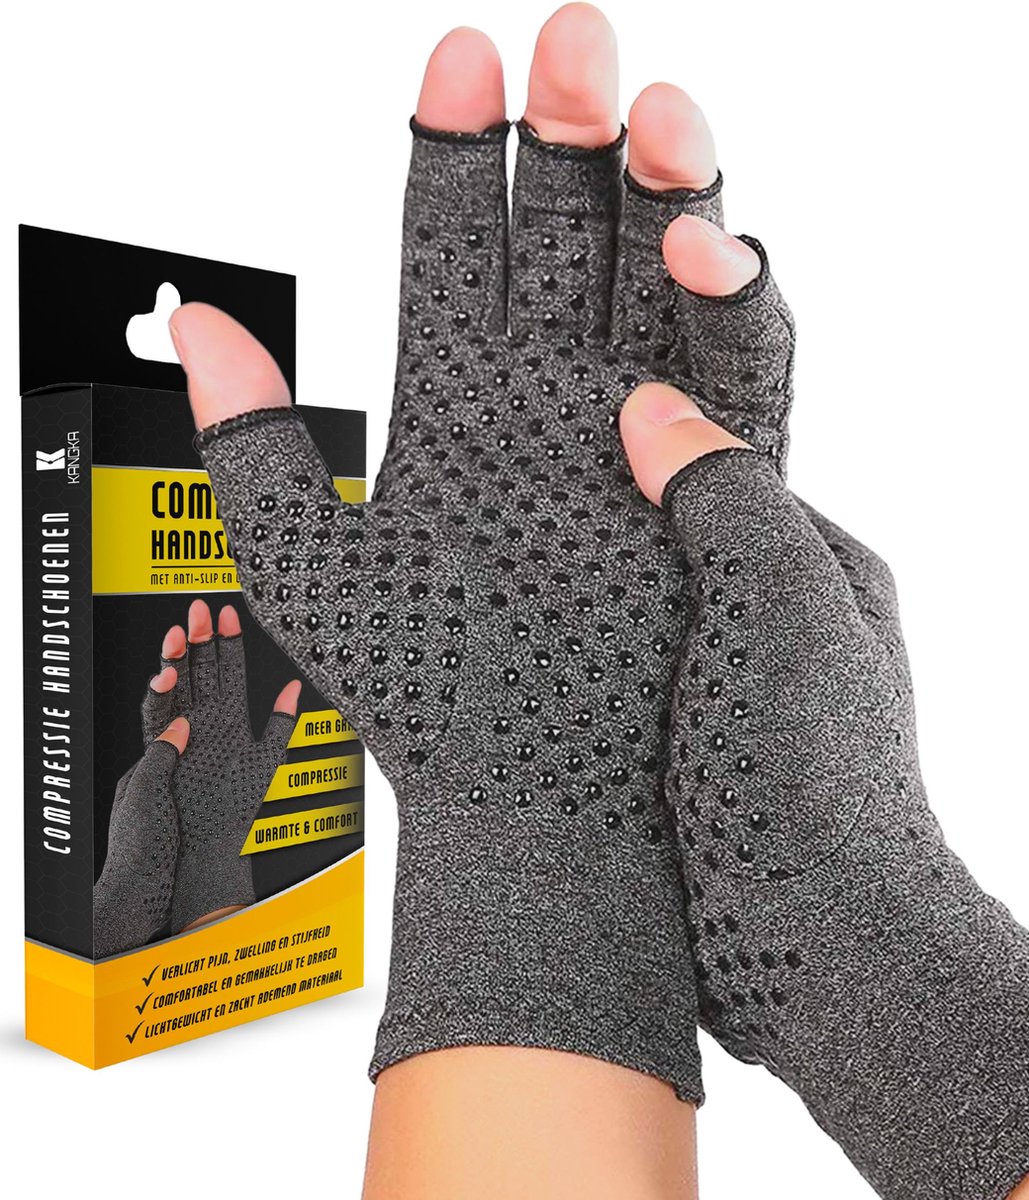 KANGKA® Reuma Therapeutische Handschoenen - Compressie Handschoenen Maat L - voor Artrose, Reuma, Artritis, RSI, CTS - Unisex - Grijs